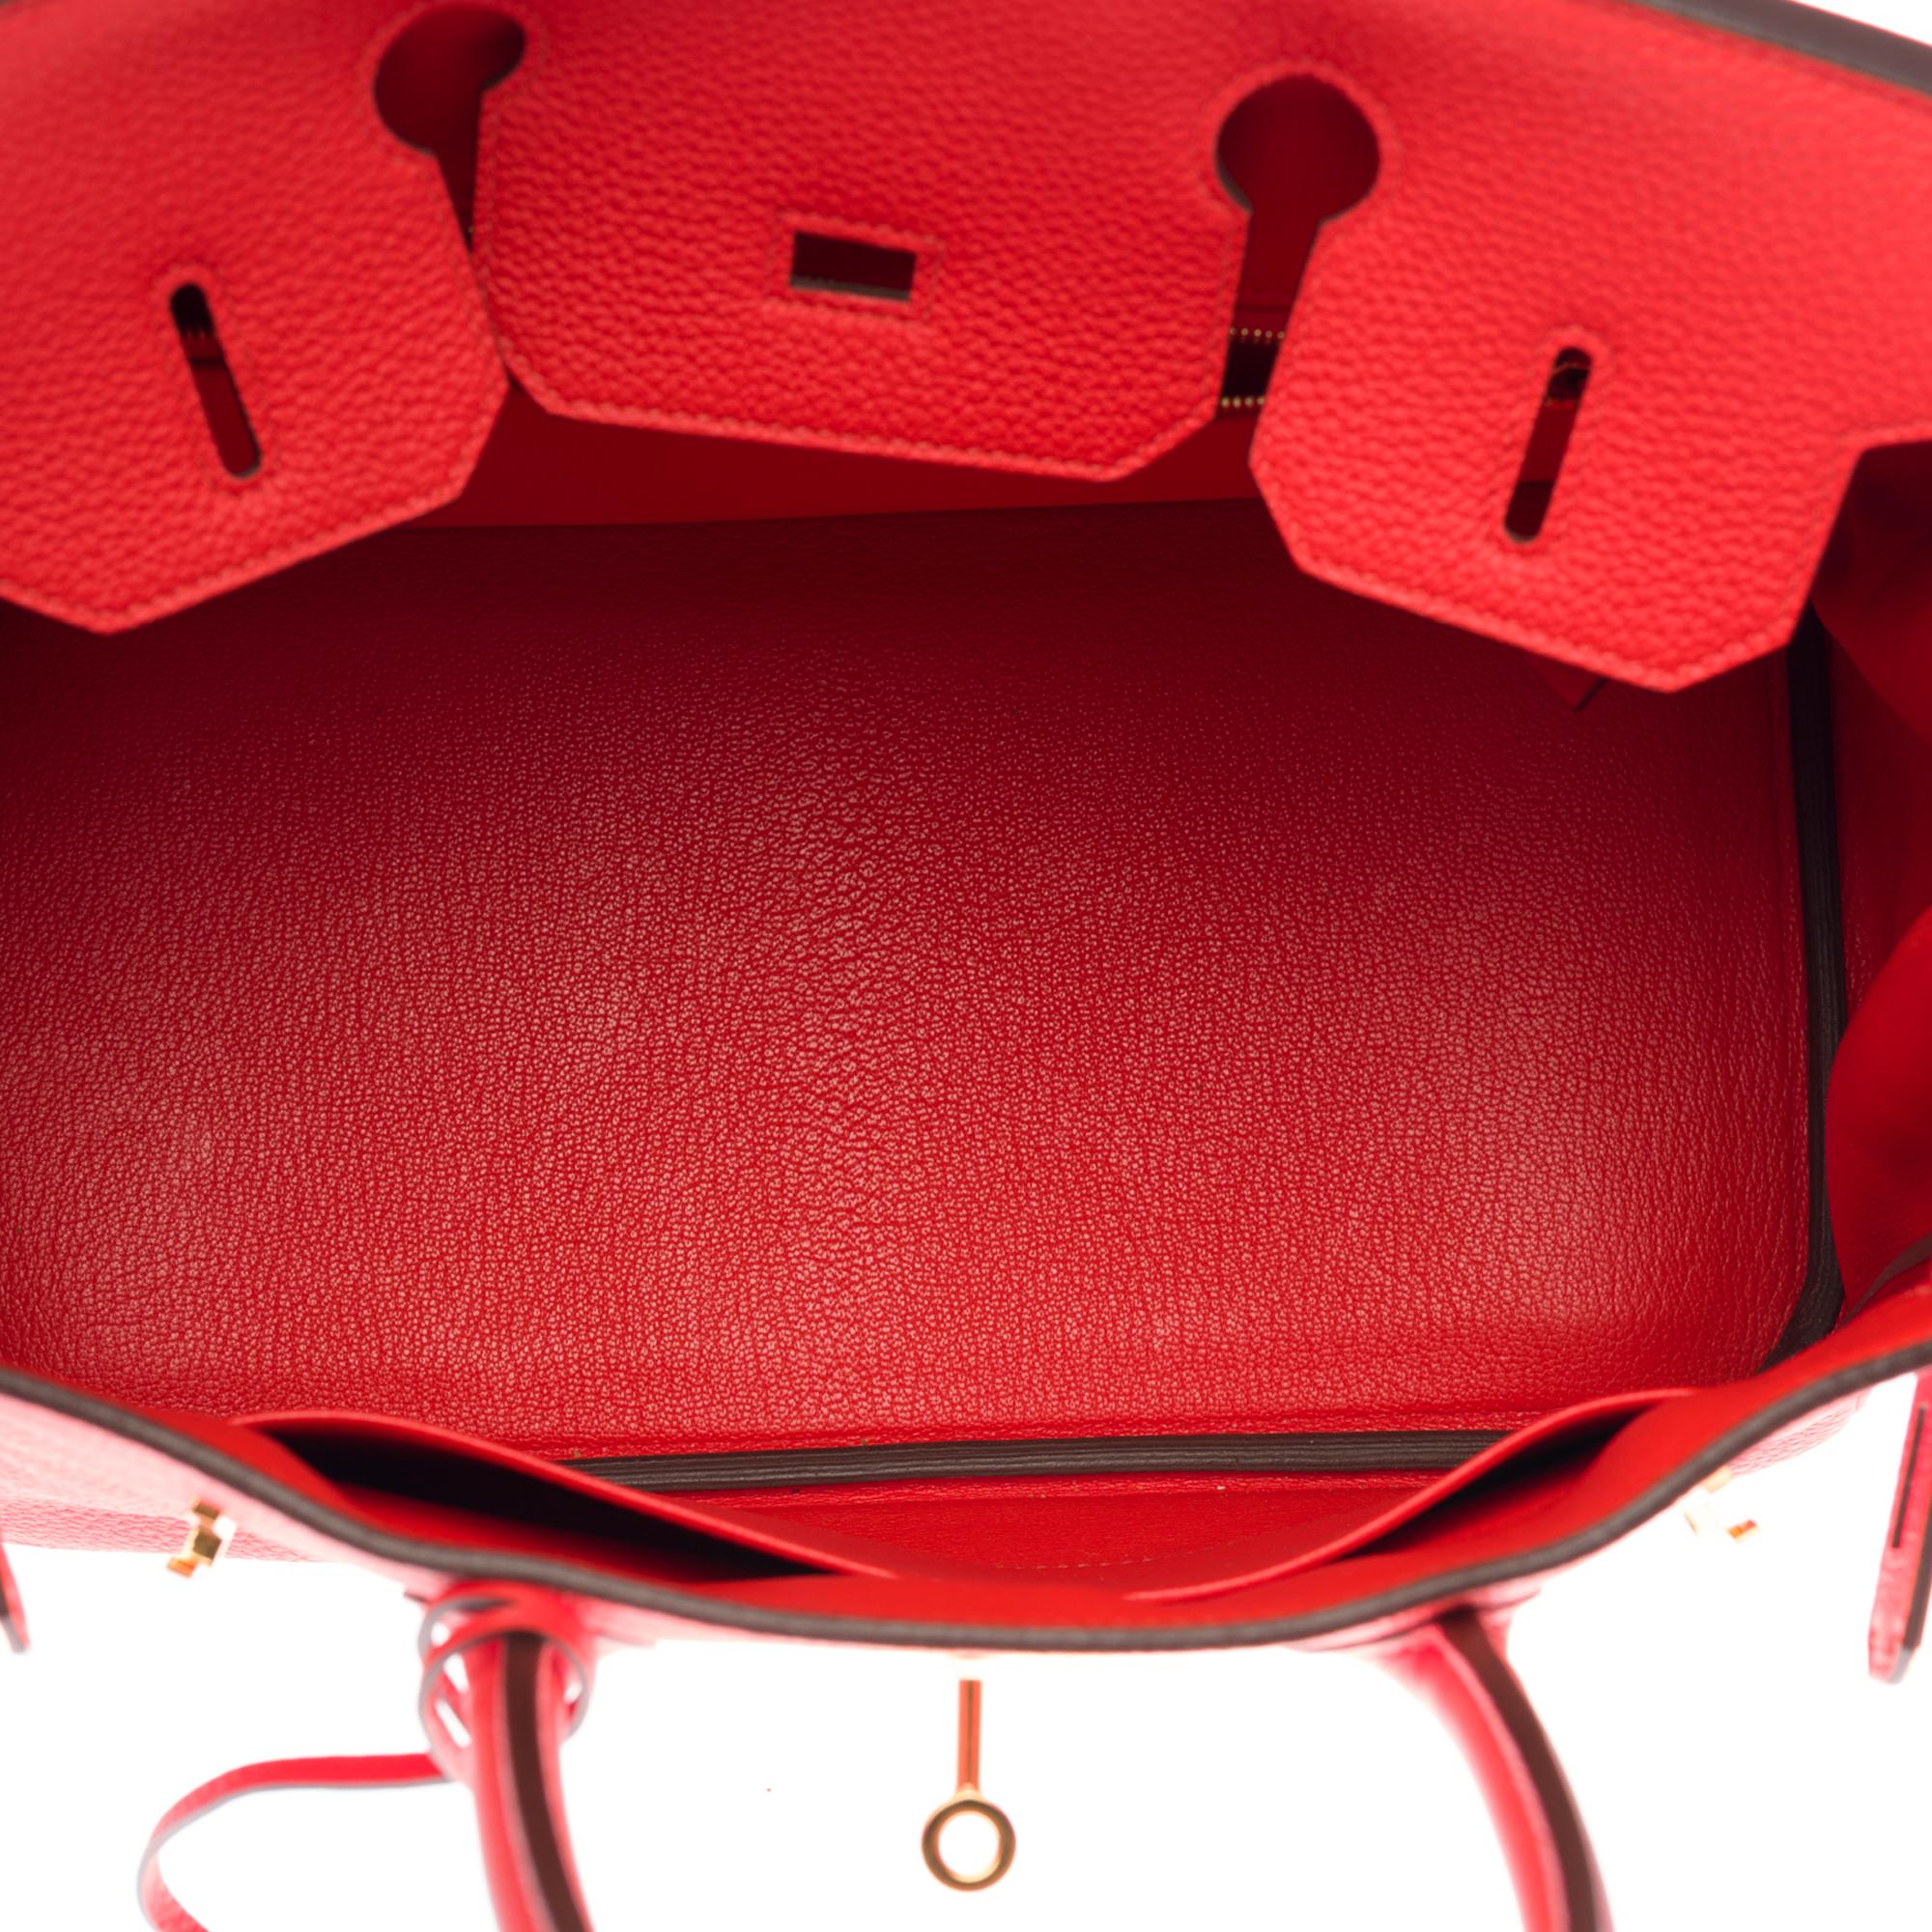 Stunning Hermès Birkin 30 handbag in Rouge Capucine Togo leather, GHW 2